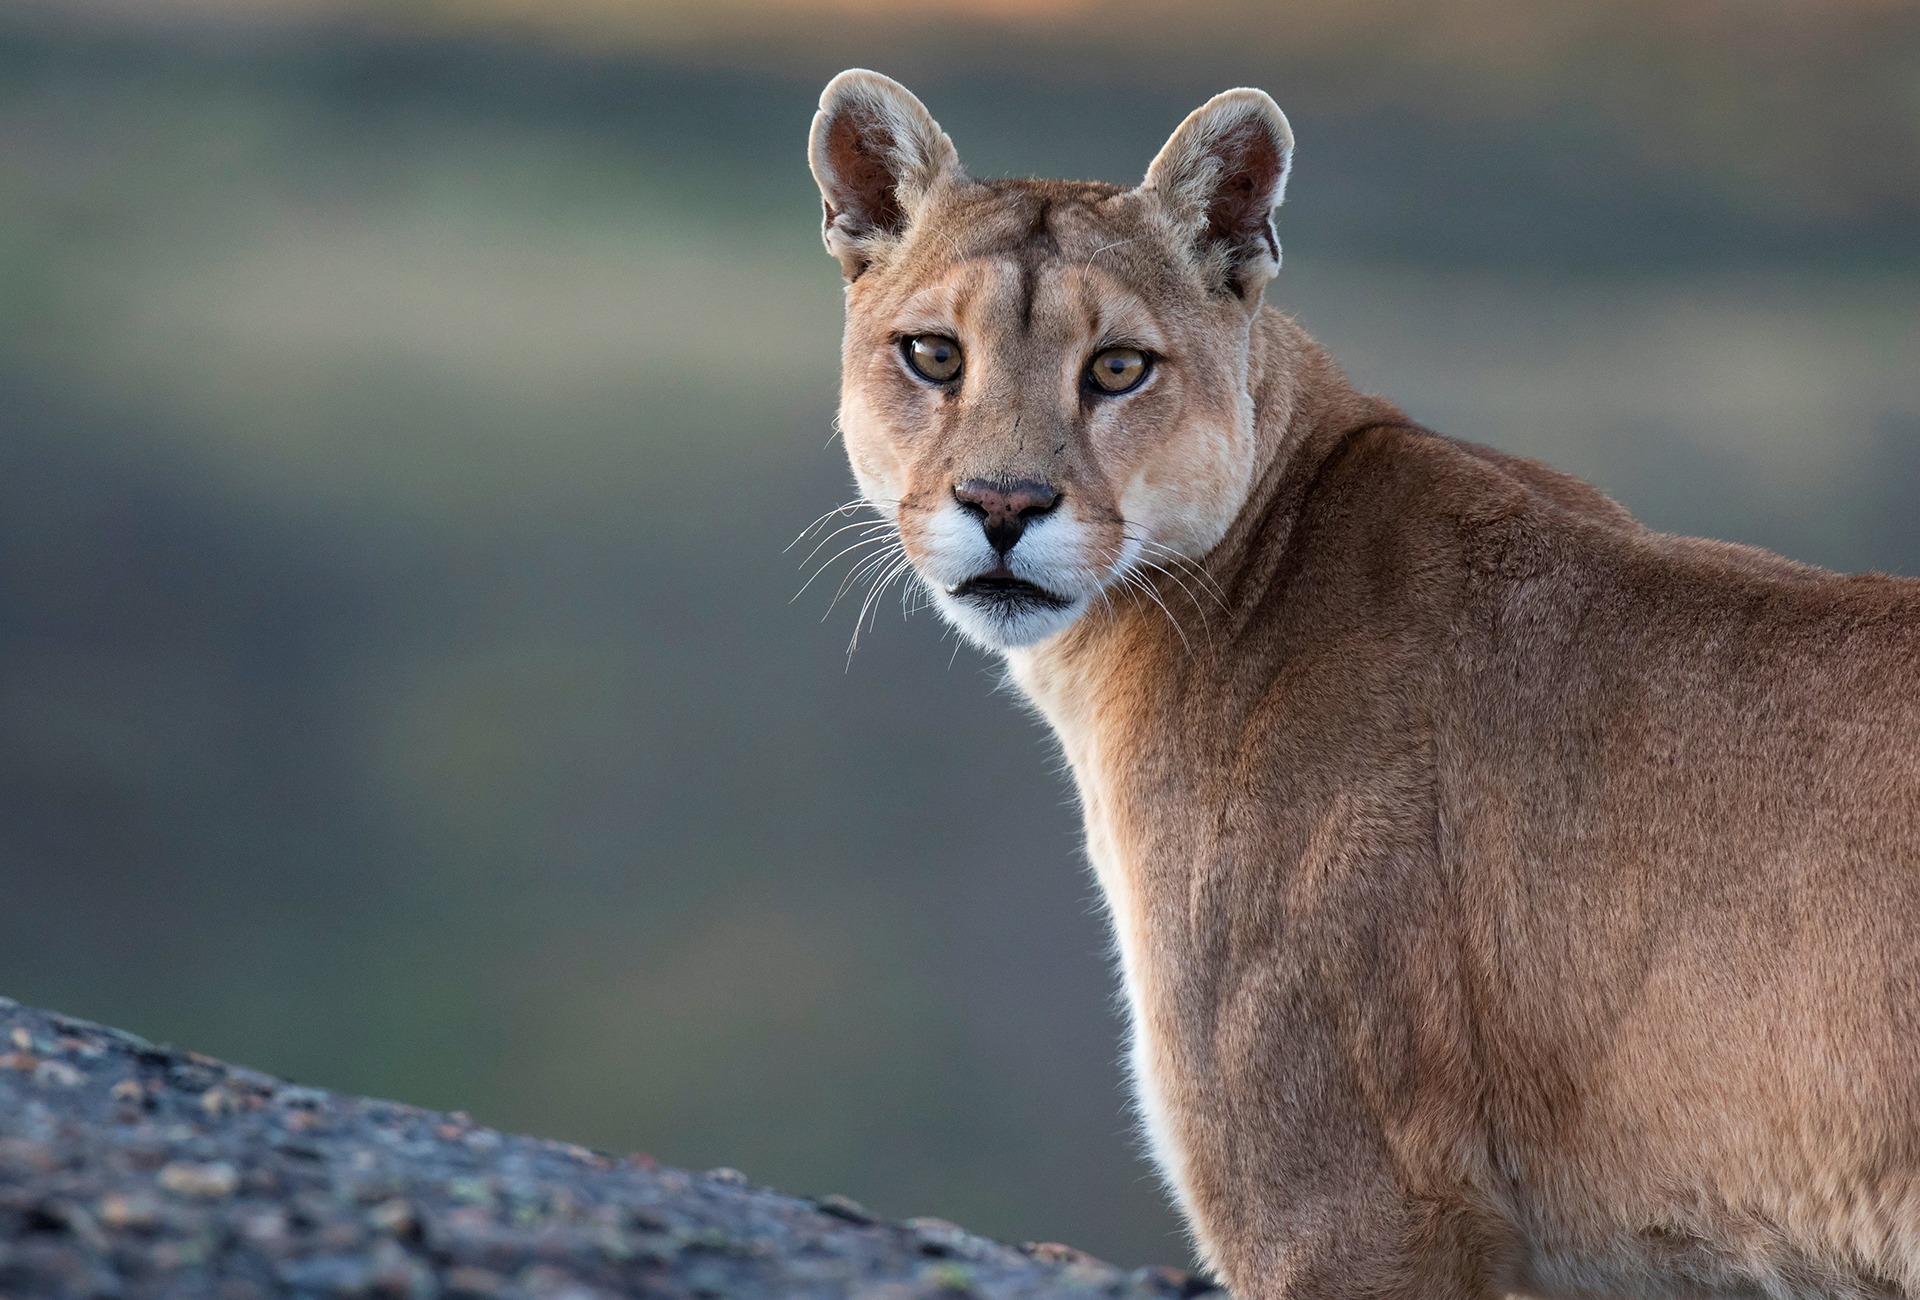 Puma, by Agami Photo Agency